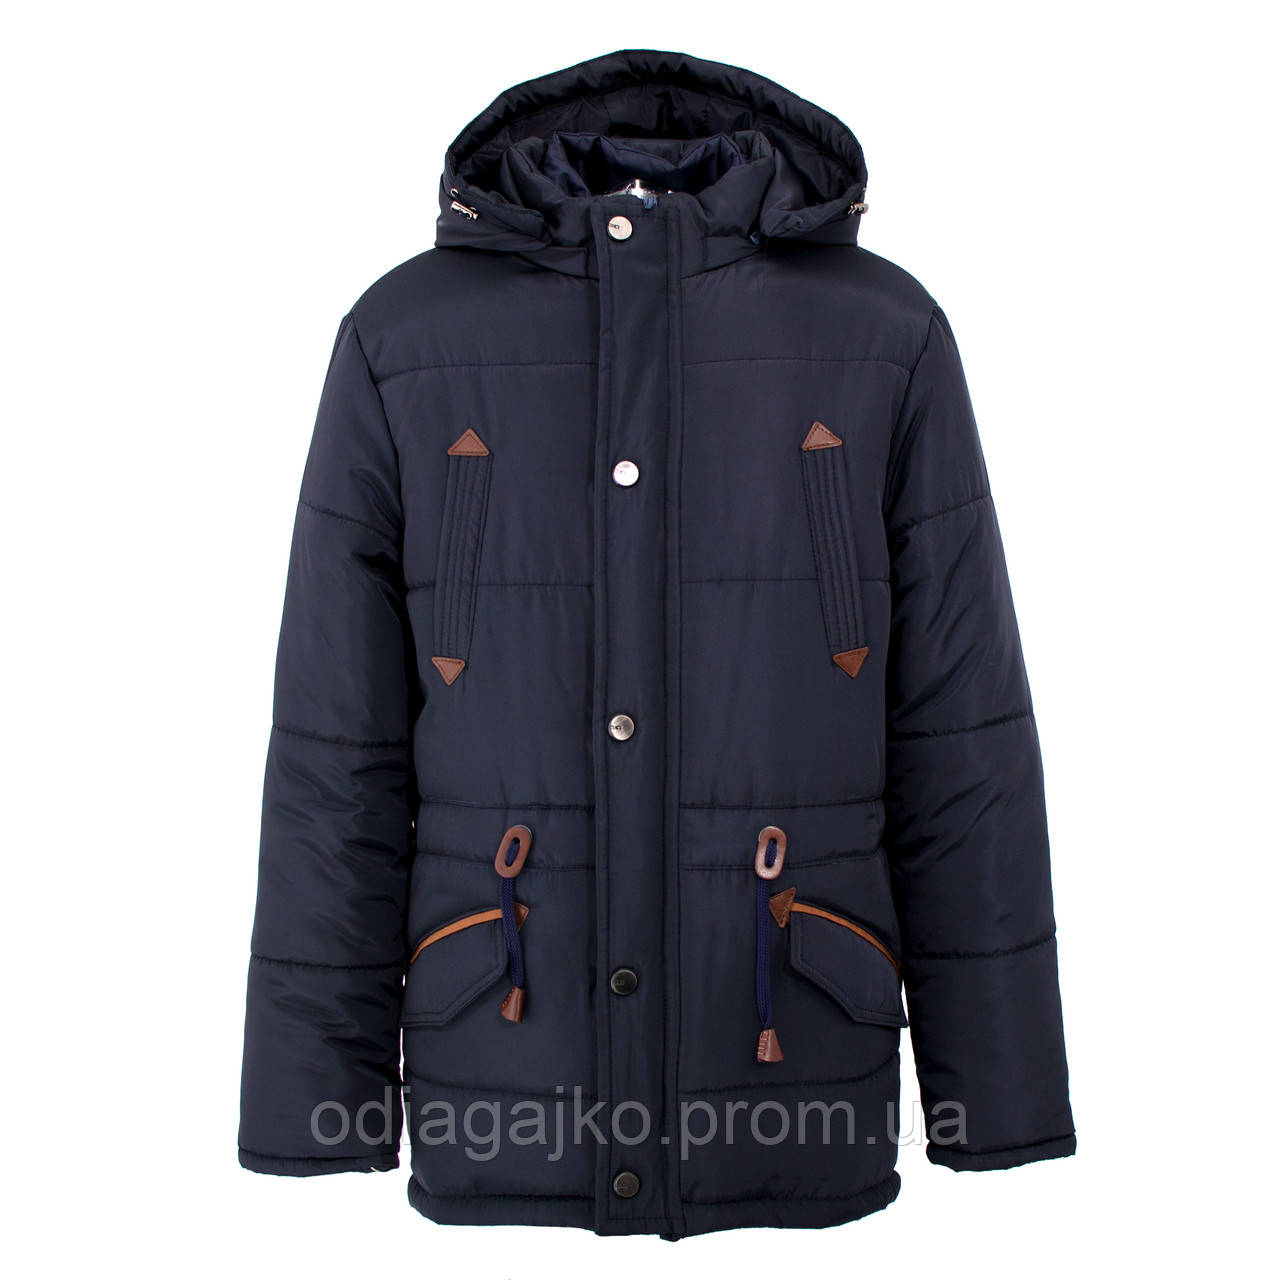 Куртка дитяча зимова-демісезонна для хлопчика Парка темно-синя 158,164,170,176 см знімний жилет